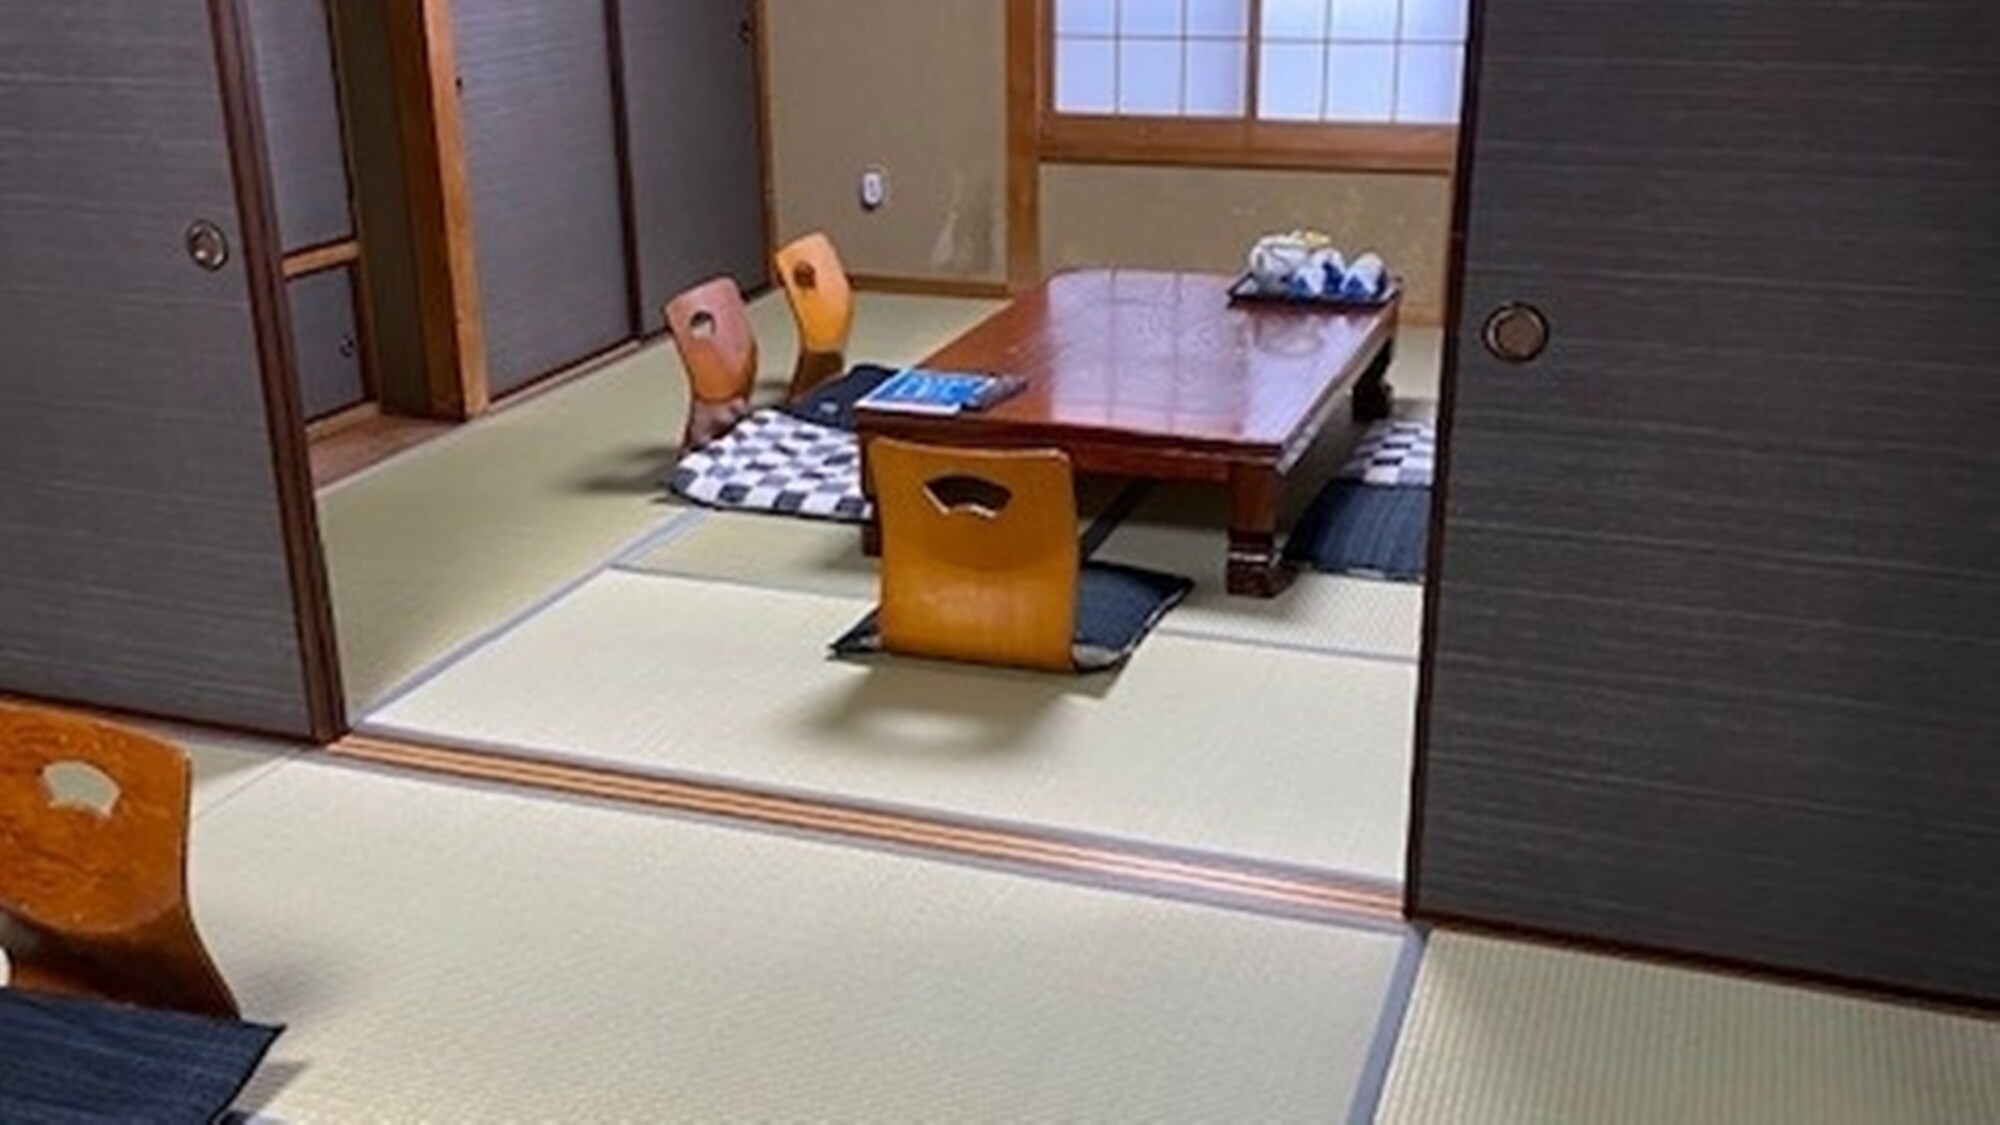 * [ตัวอย่างห้องพัก] เราจะเตรียมห้องสไตล์ญี่ปุ่นที่มีเสื่อทาทามิ 7.5 ถึง 10 เสื่อ